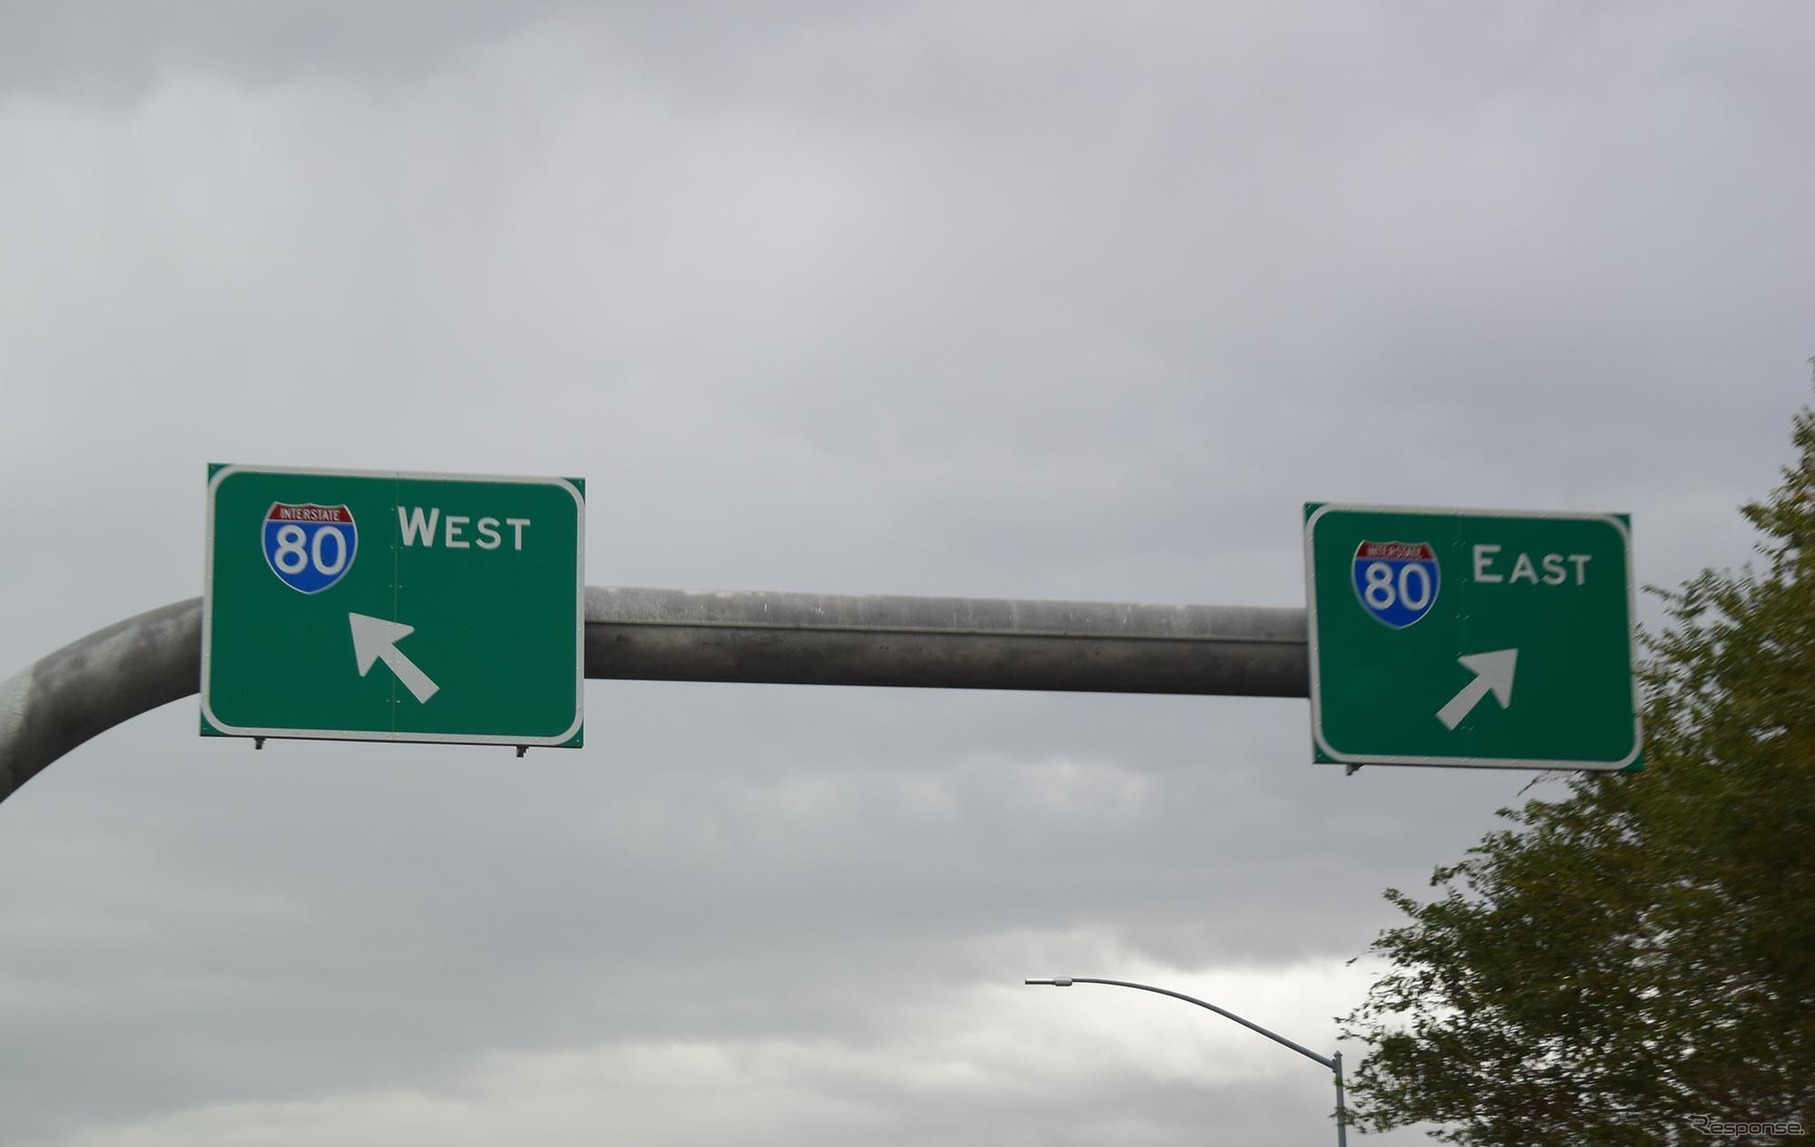 アメリカの高速道路は都市名の案内は不足気味。指標として想像以上に重要かつ有用だったのは東西南北。